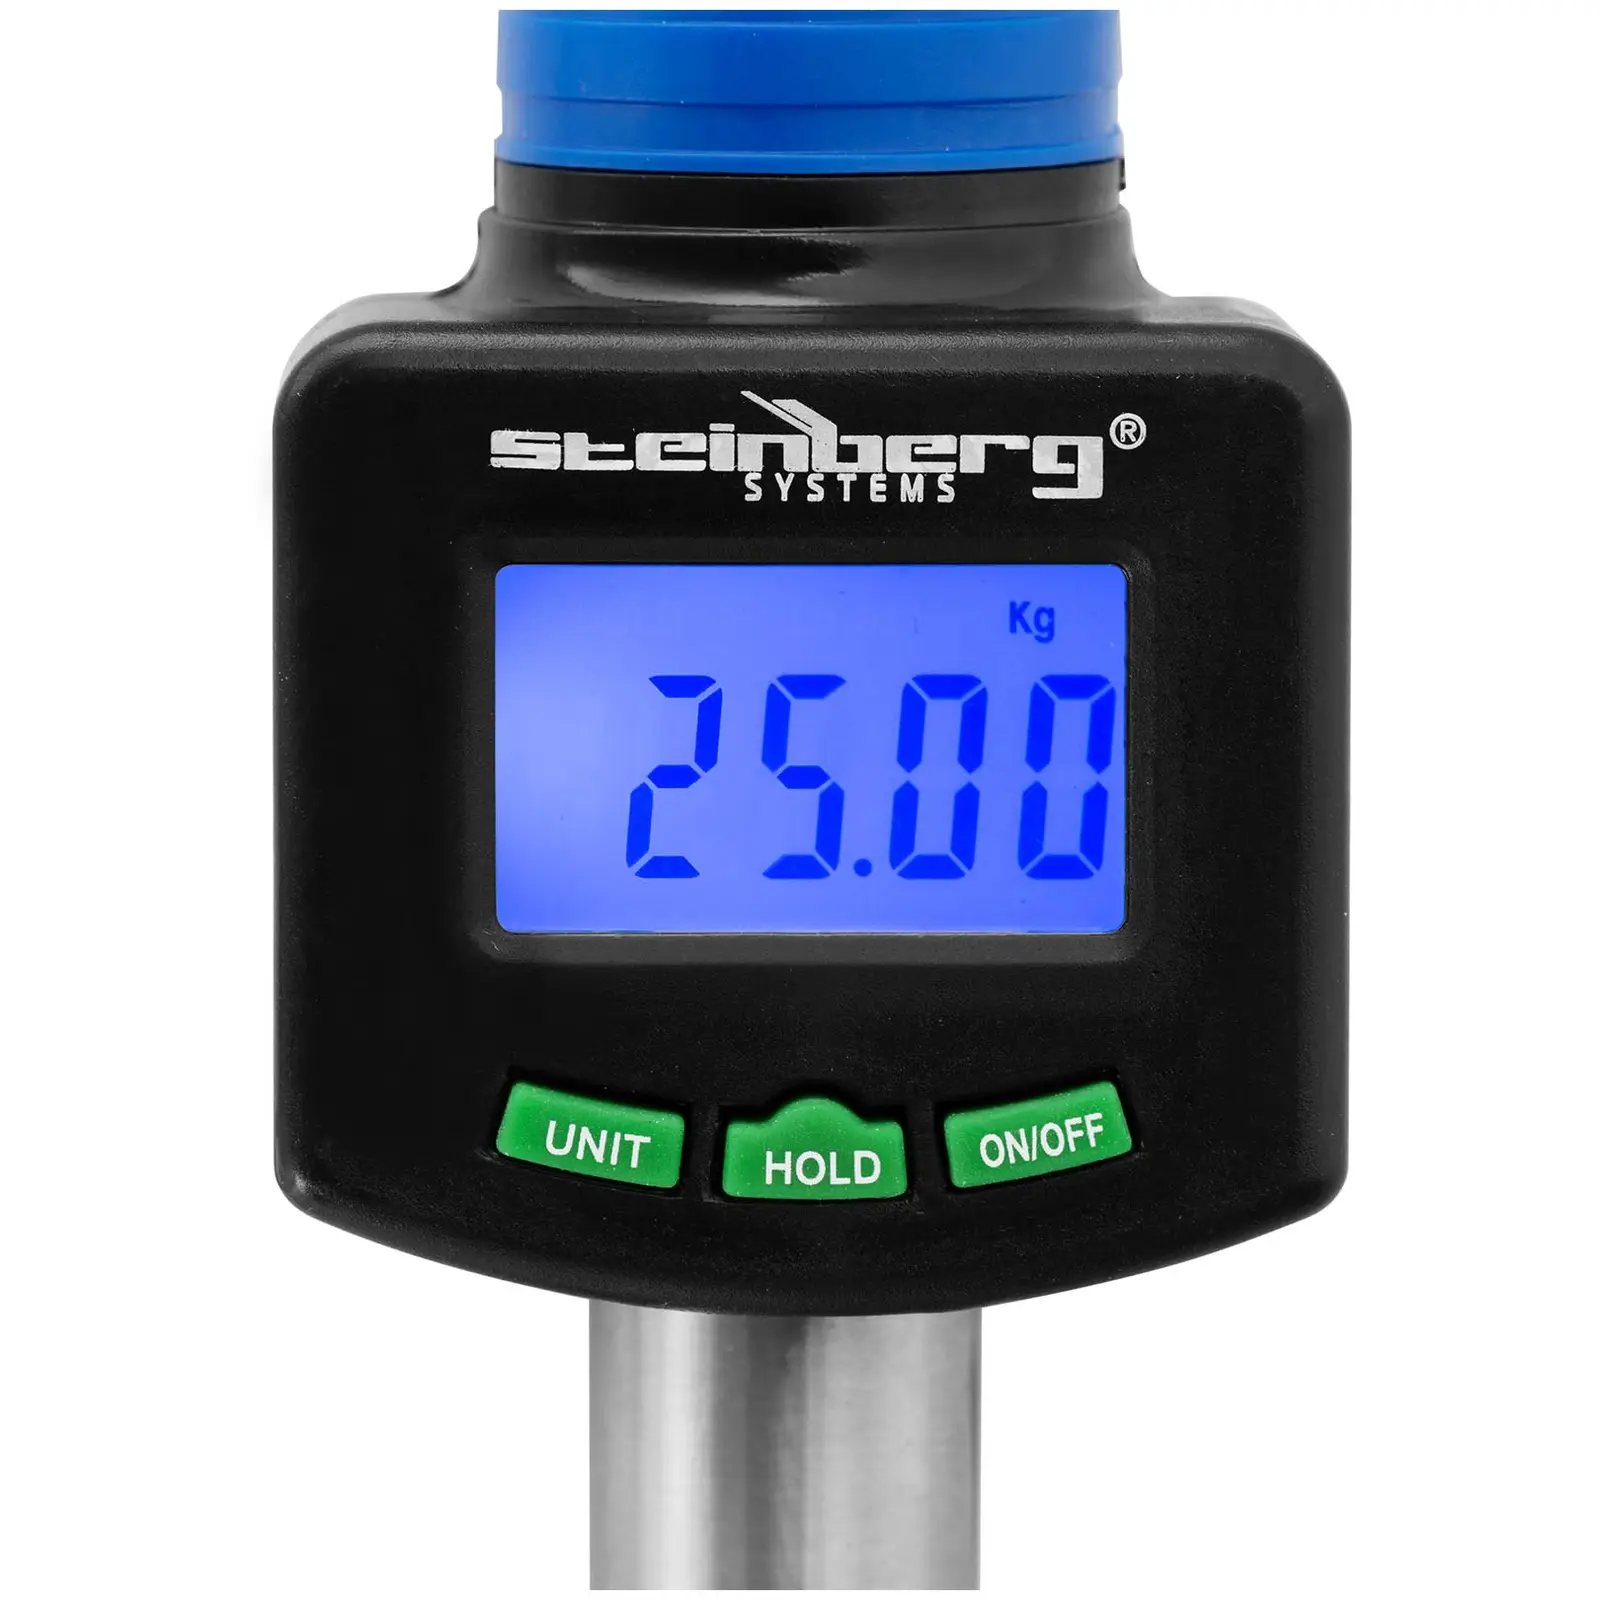 Lip grip - 25 kg - Med digital våg och termometer - LCD